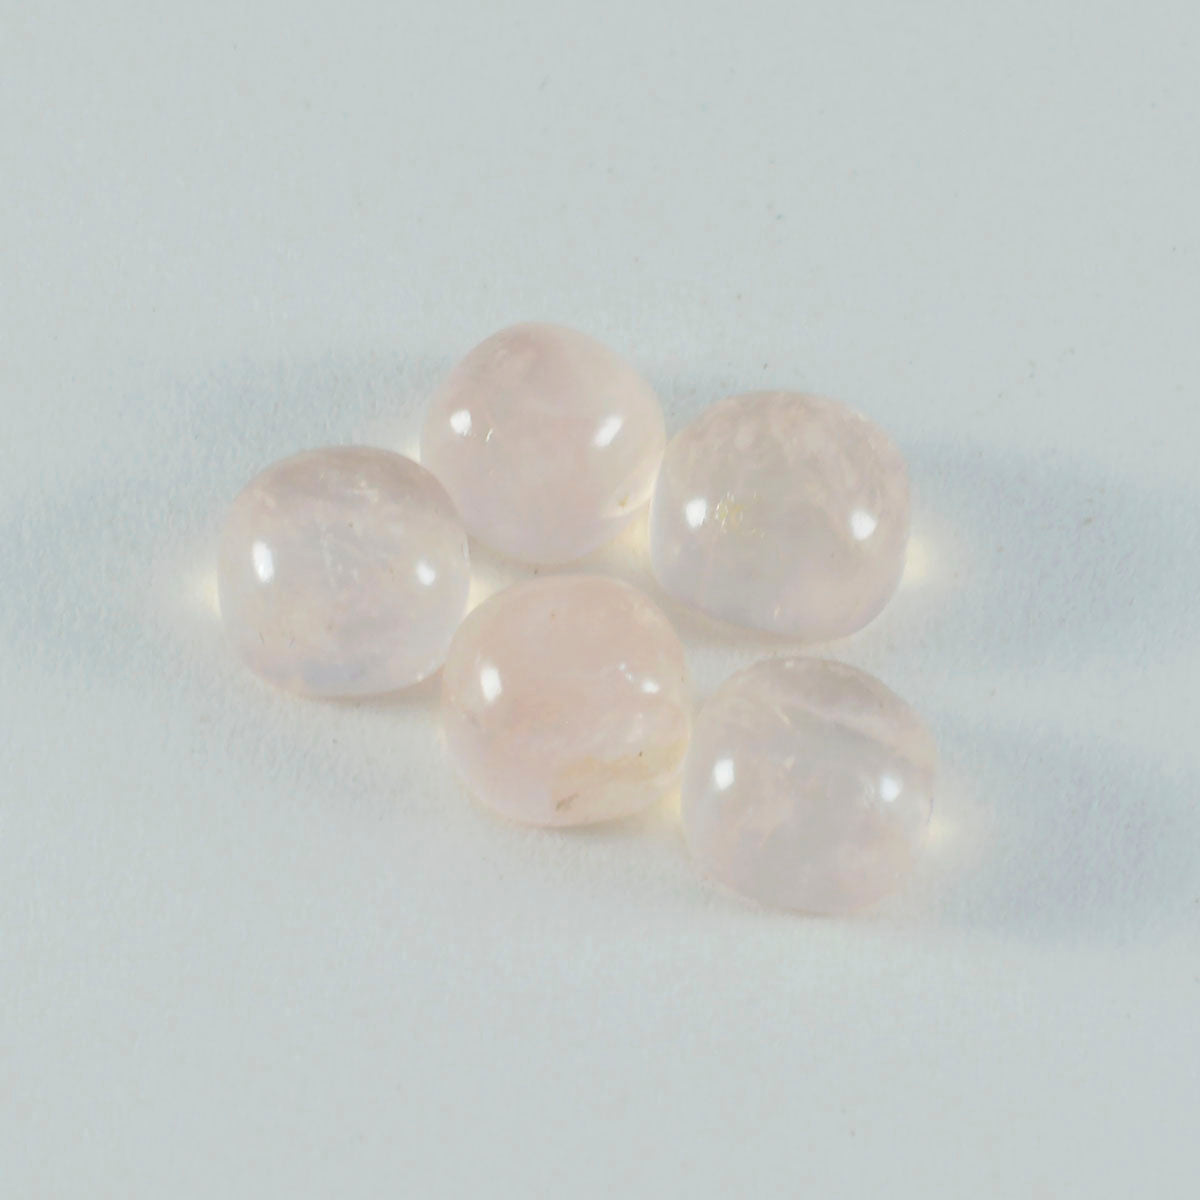 riyogems 1 шт. кабошон из розового кварца 8x8 мм в форме подушки, хорошее качество, свободный драгоценный камень